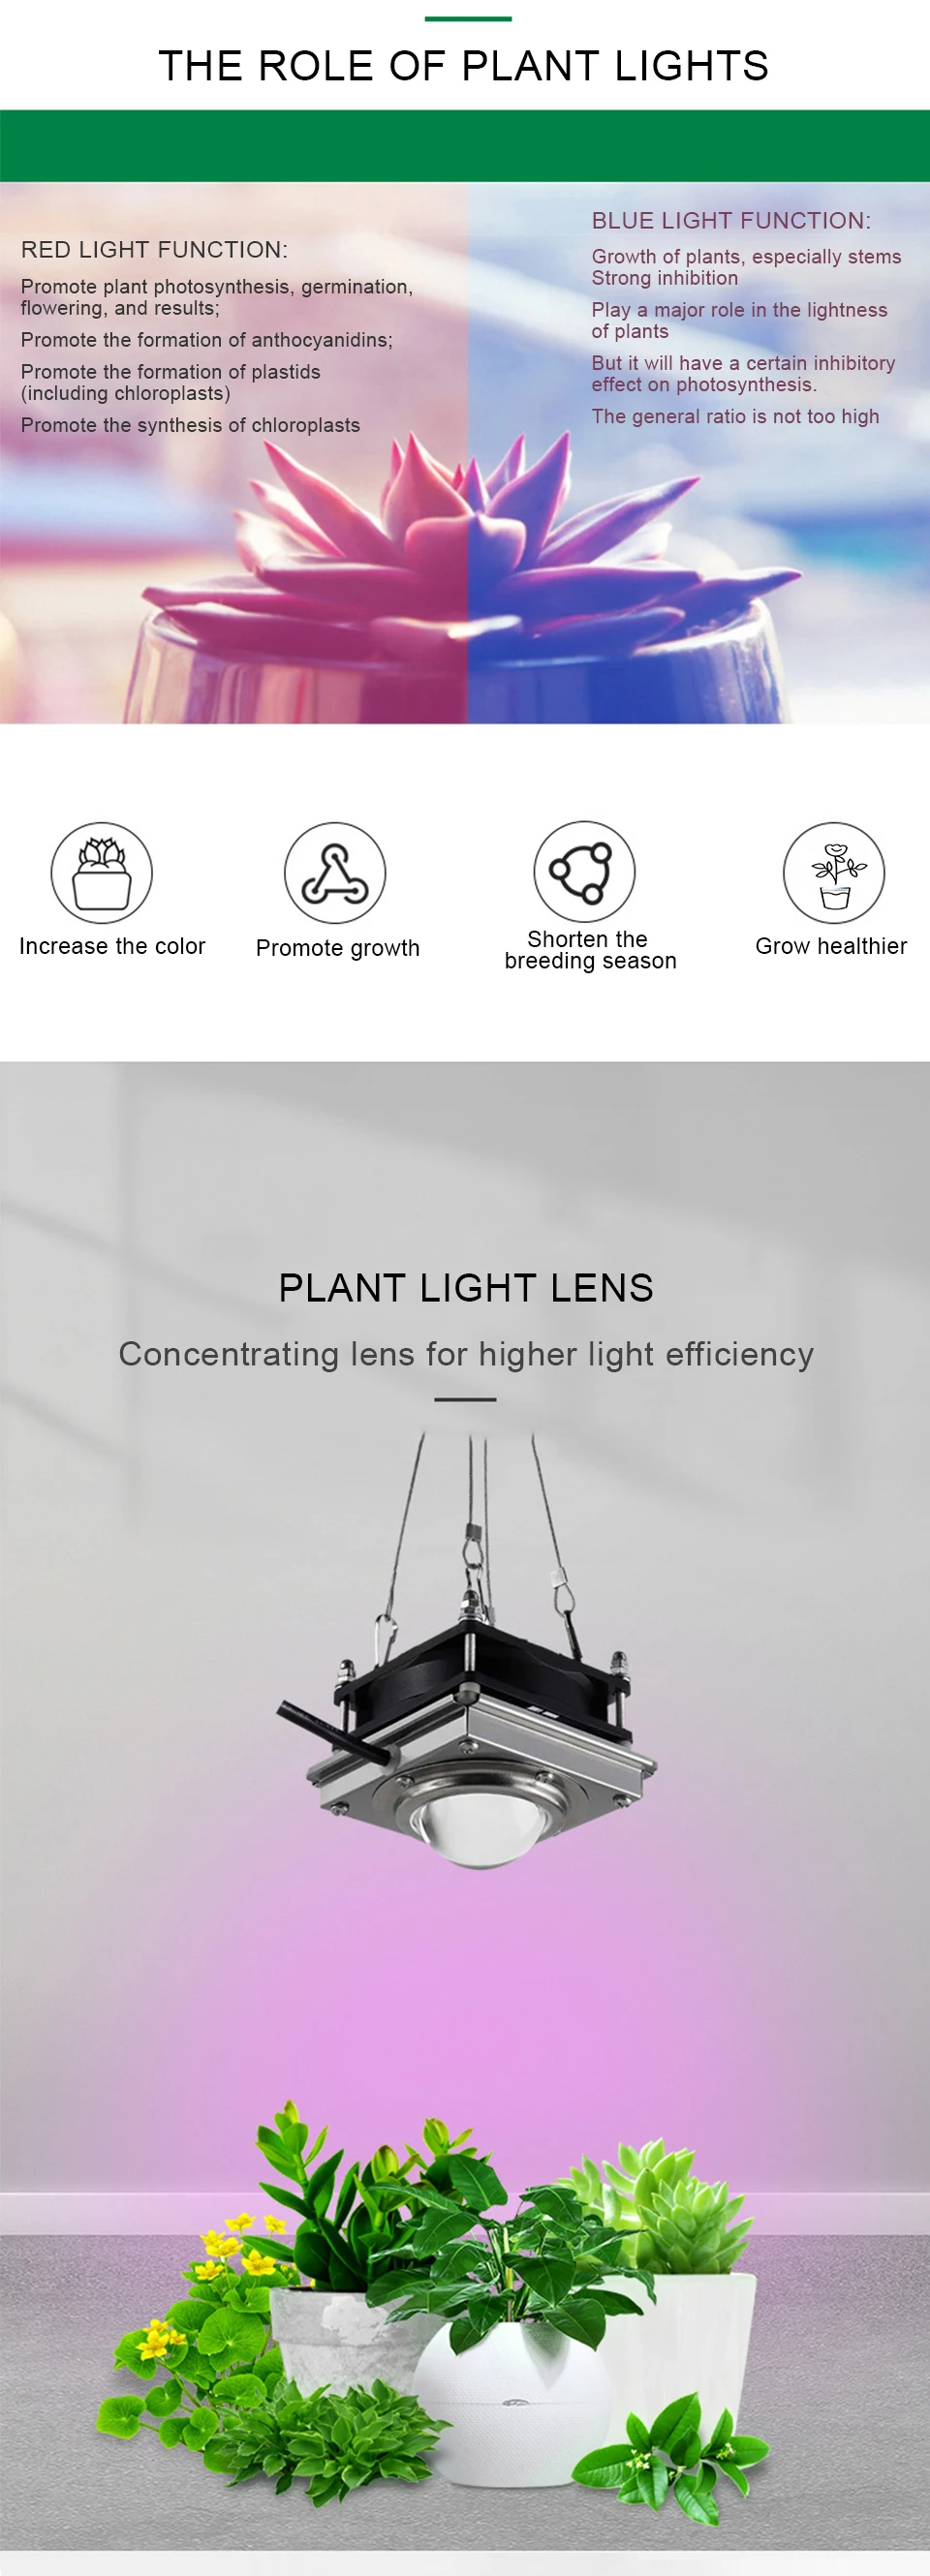 Светильник для выращивания палаток COB светодиодный 150 Вт комнатный светильник для растений Фито лампа полный спектр коробка для выращивания комнатное освещение для теплицы для комнатных растений